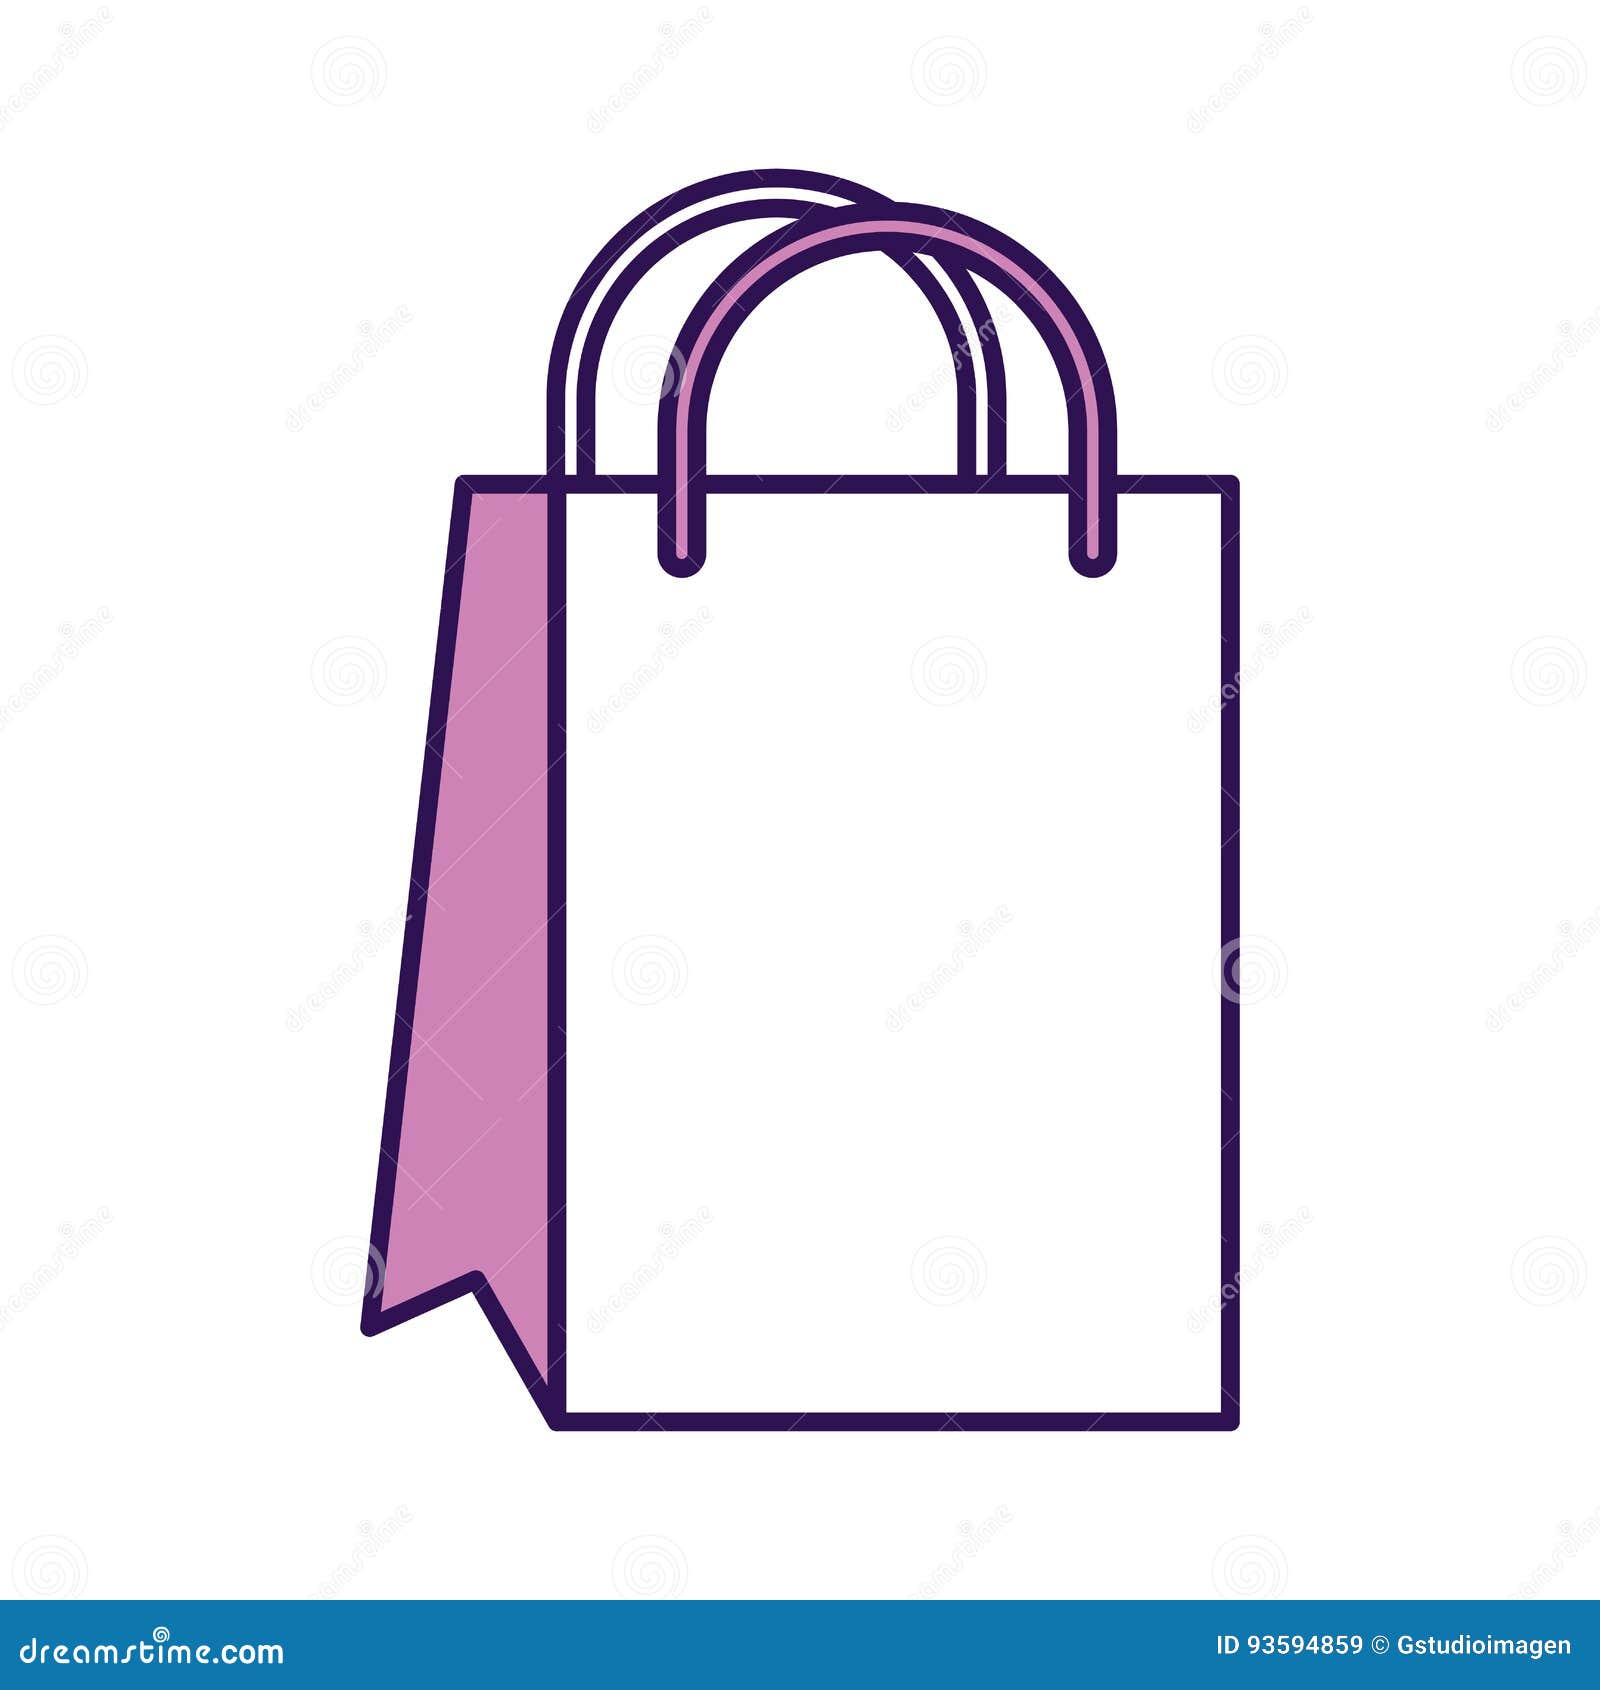 Shopping Bag Cartoon Illustration Design Icon Stock Vector